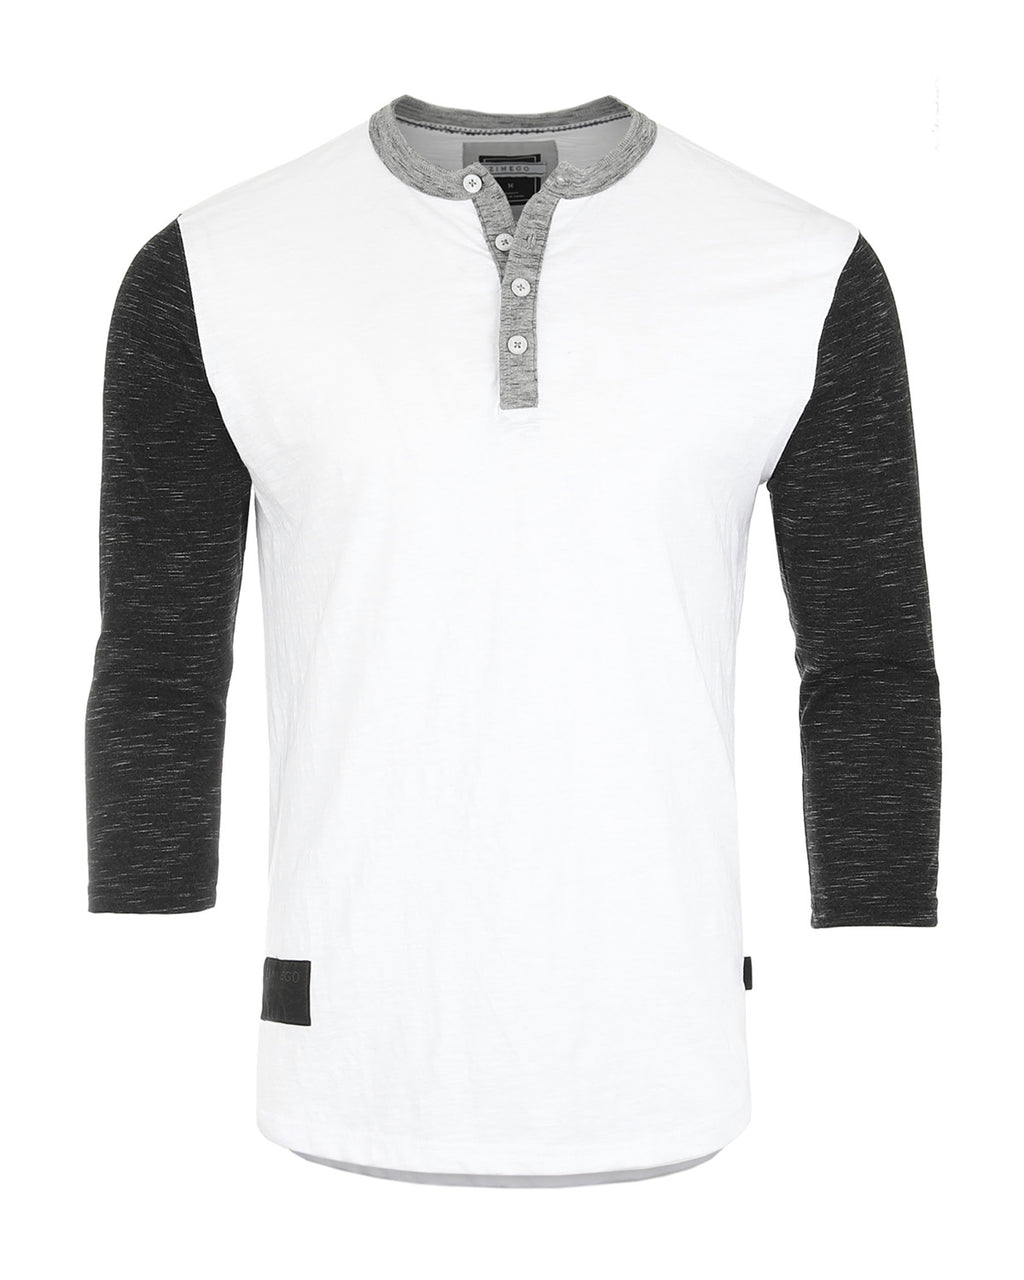 ZIMEGO Henley de béisbol blanco y negro de manga 3/4 para hombre - Camisas casuales con botones atléticos y cuello redondo 